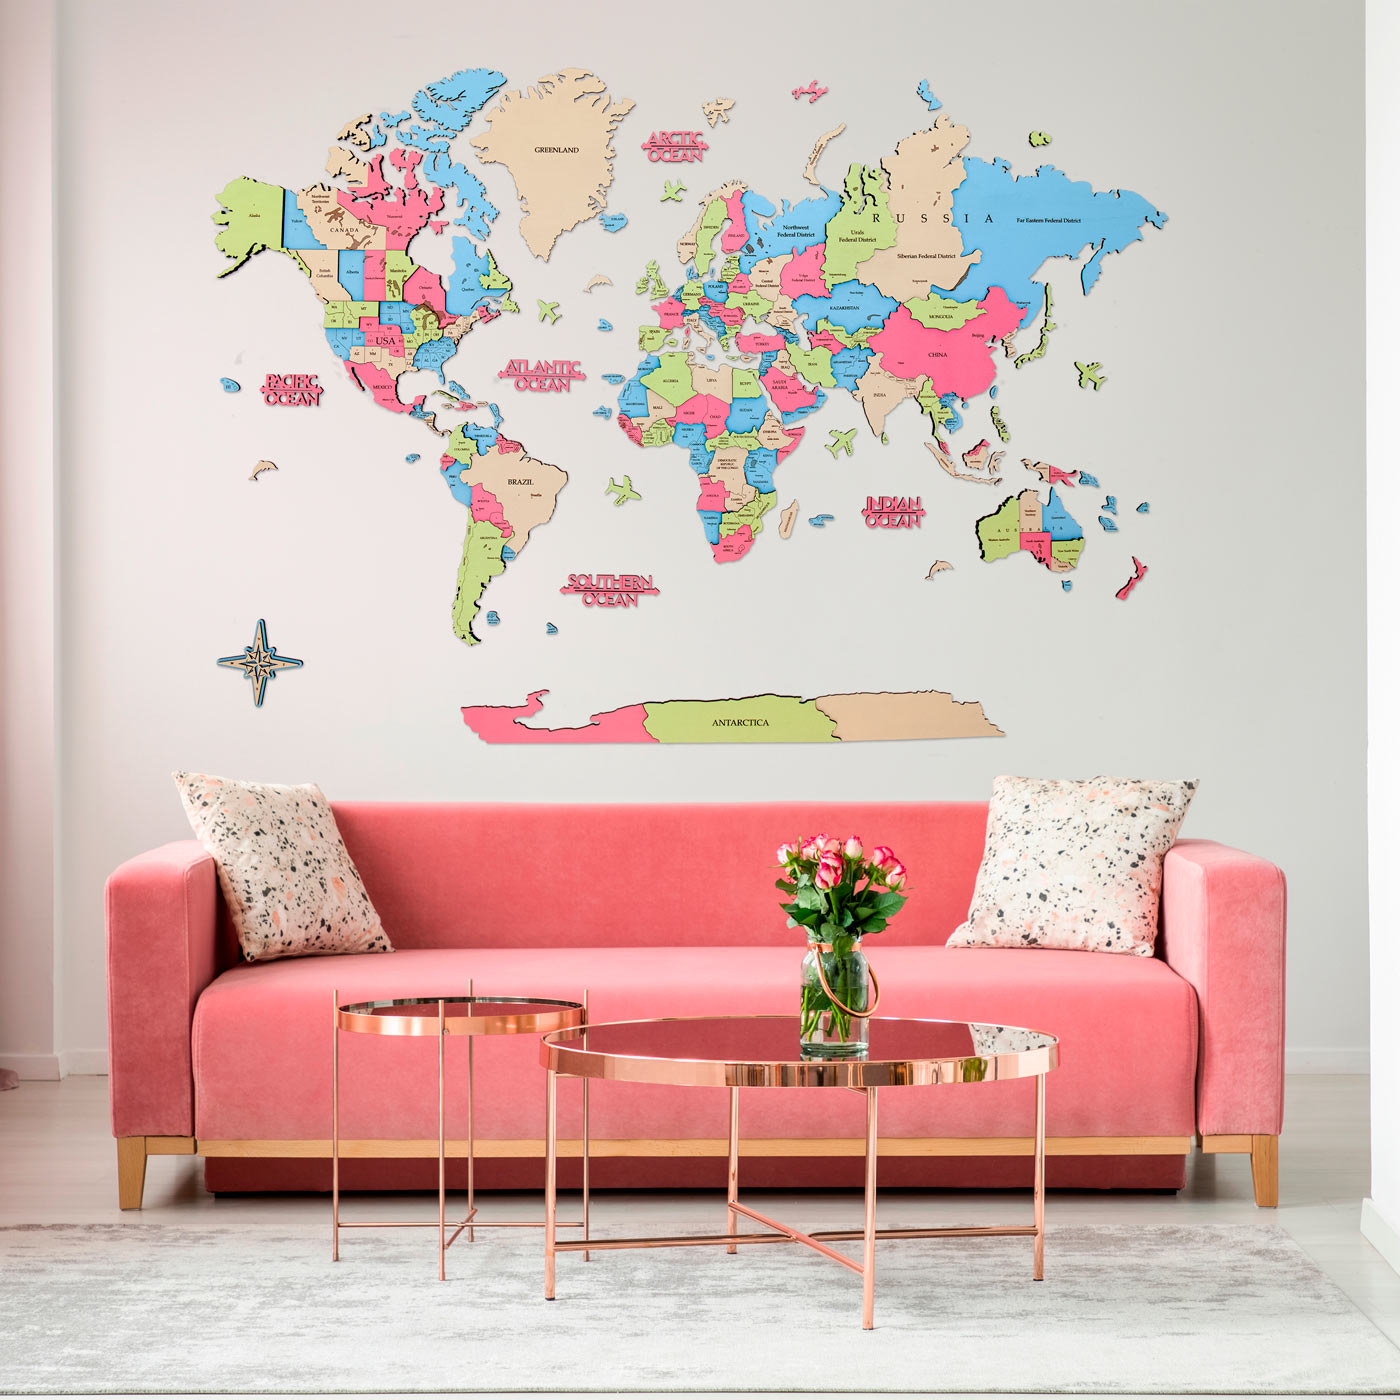 Τρισδιάστατος ξύλινος παγκόσμιος χάρτης. Ξύλινη διακόσμηση τοίχου. Ξύλινος παγκόσμιος χάρτης σε απαλά χρώματα για παιδιά. Ksilart